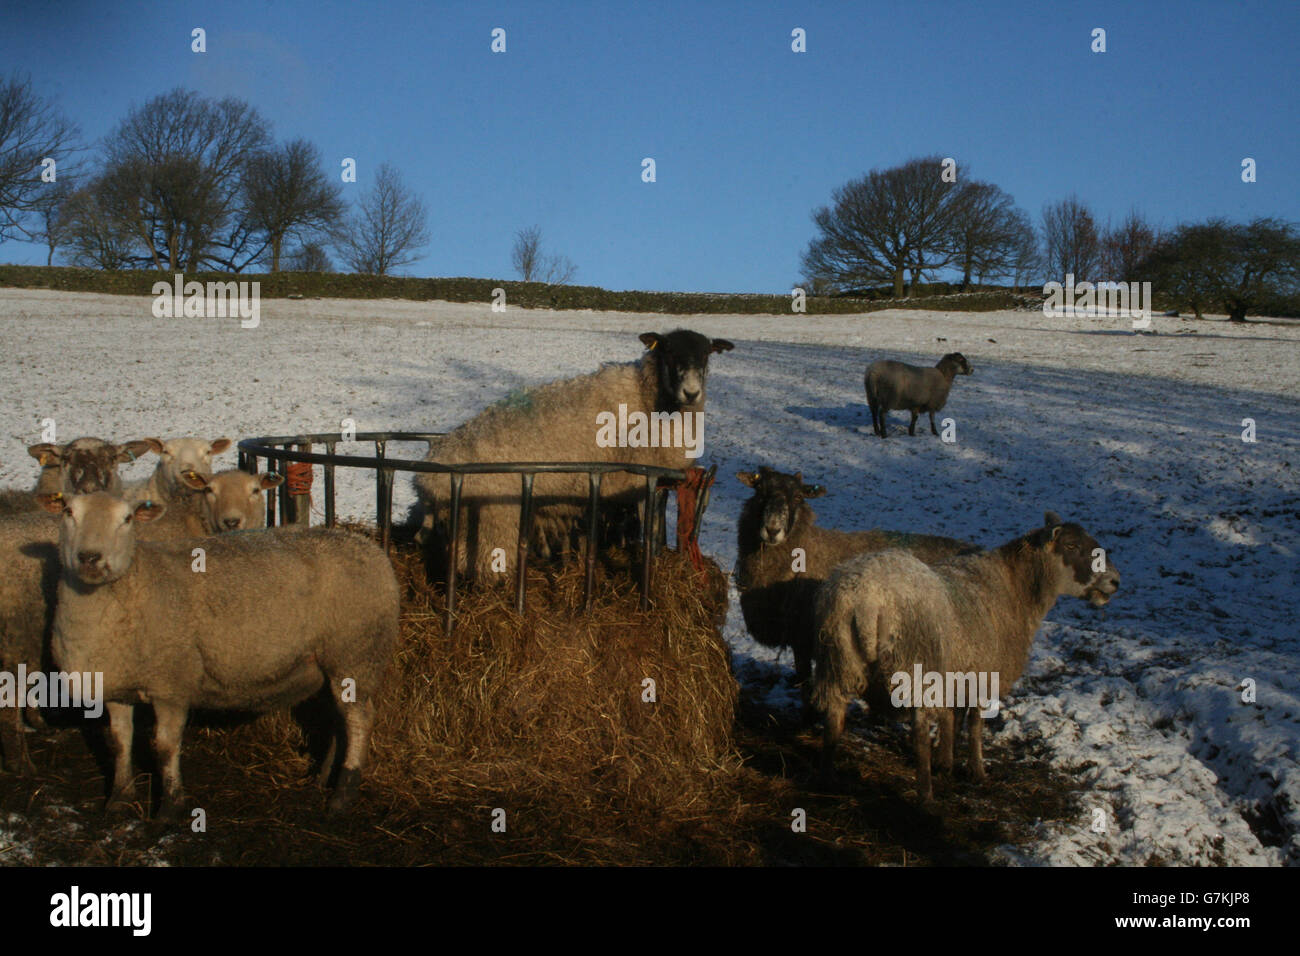 Eine allgemeine Ansicht von Schafen in verschneiten Feldern oberhalb von Low Bradfield in der Nähe von Sheffield, da mehr Winterwetter über Großbritannien hinweggefegt hat, was zu Störungen im Rush-Hour-Verkehr führt. Stockfoto